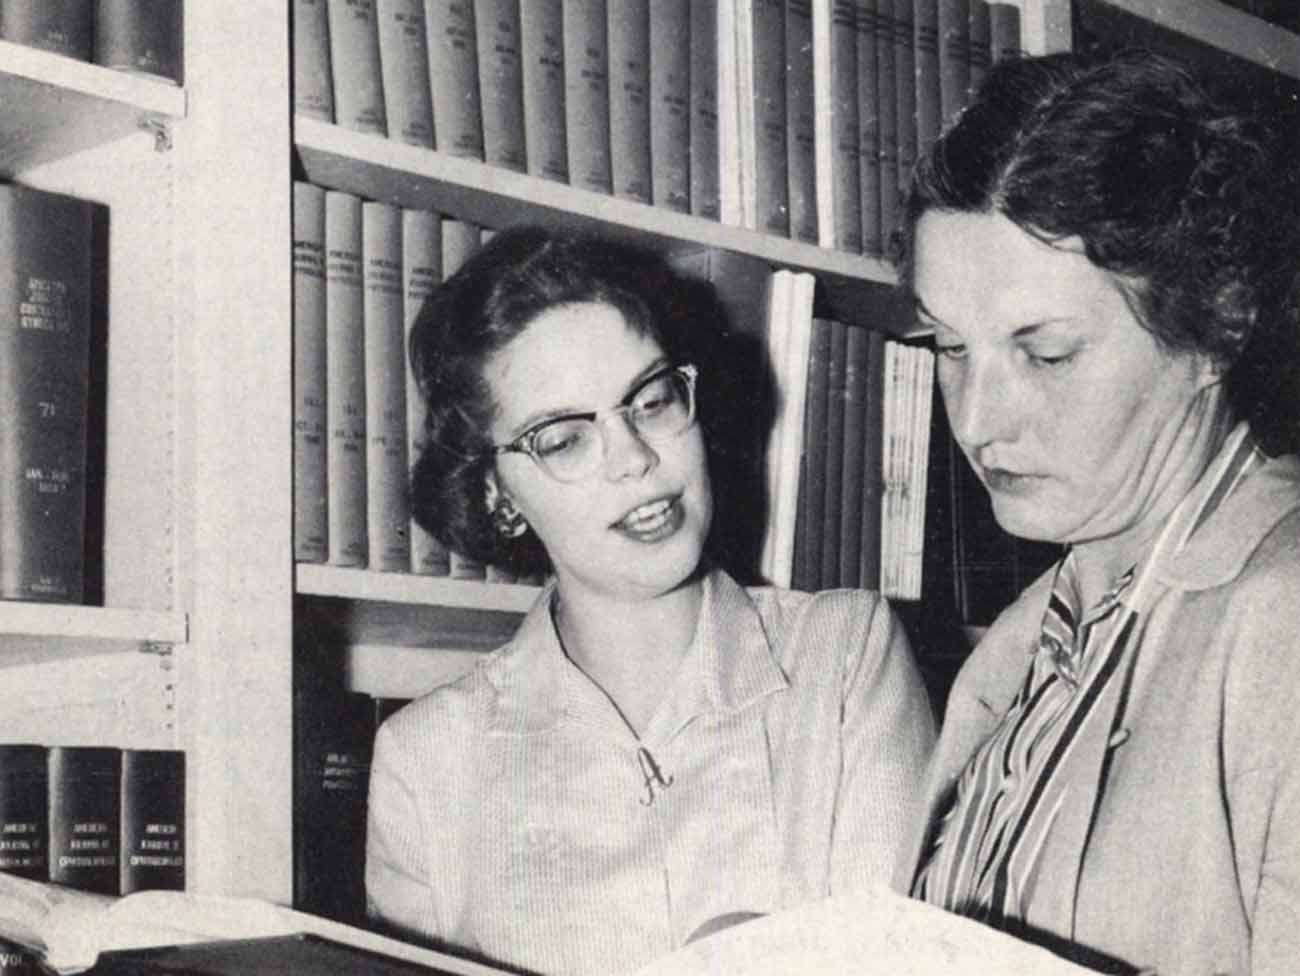 Kaiser Permanente Oakland librarians Alice Katzung and Irma Hickman, 1959